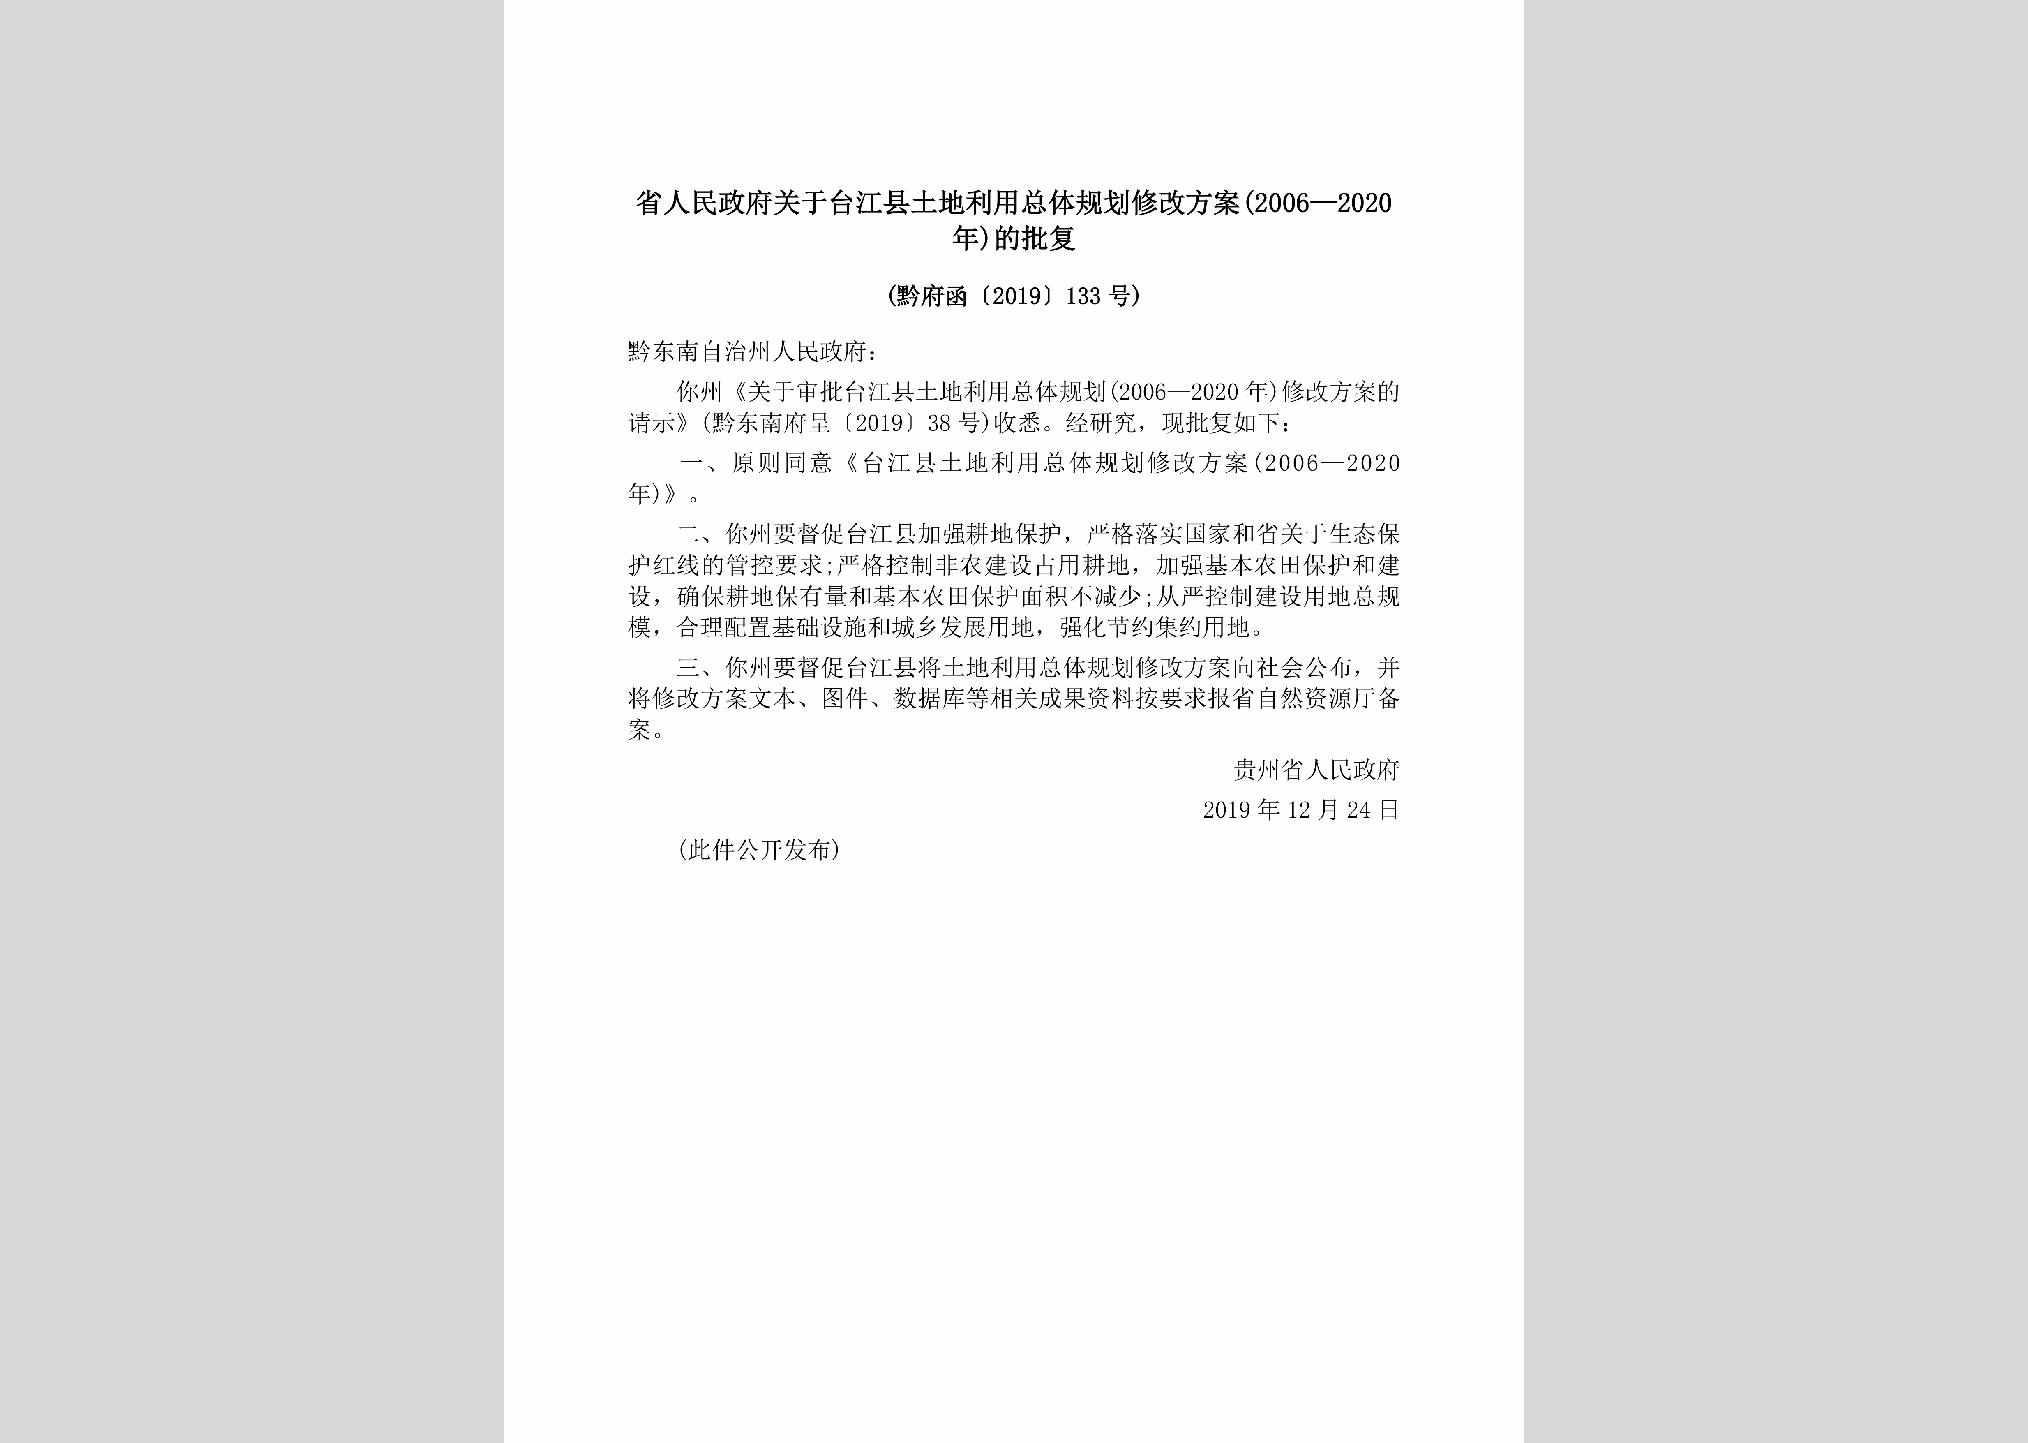 黔府函[2019]133号：省人民政府关于台江县土地利用总体规划修改方案(2006—2020年)的批复